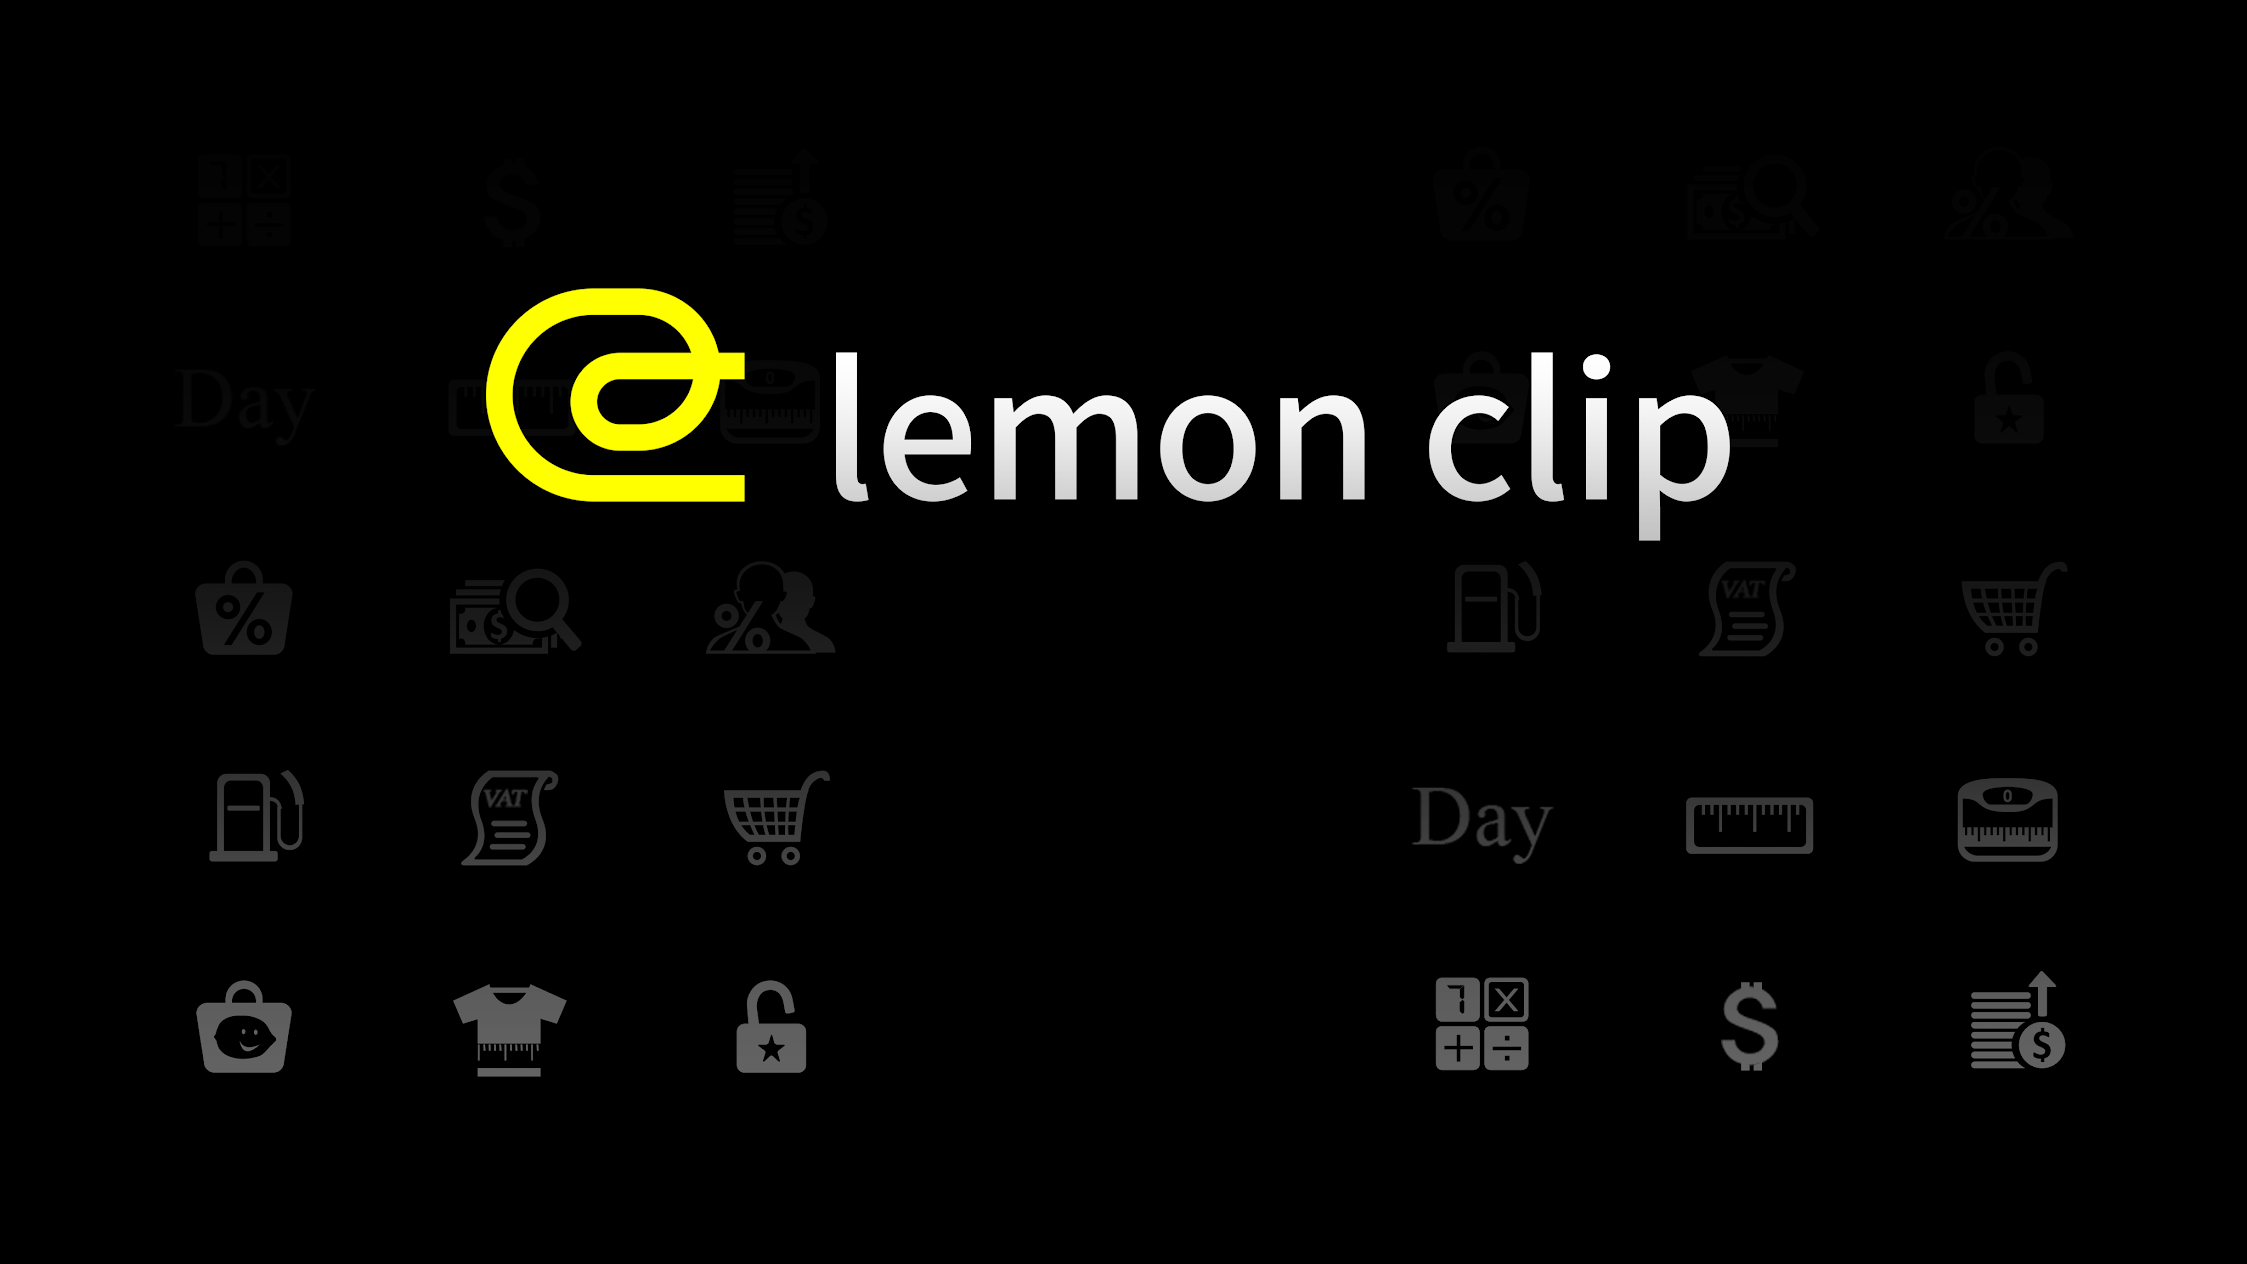 LemonClip